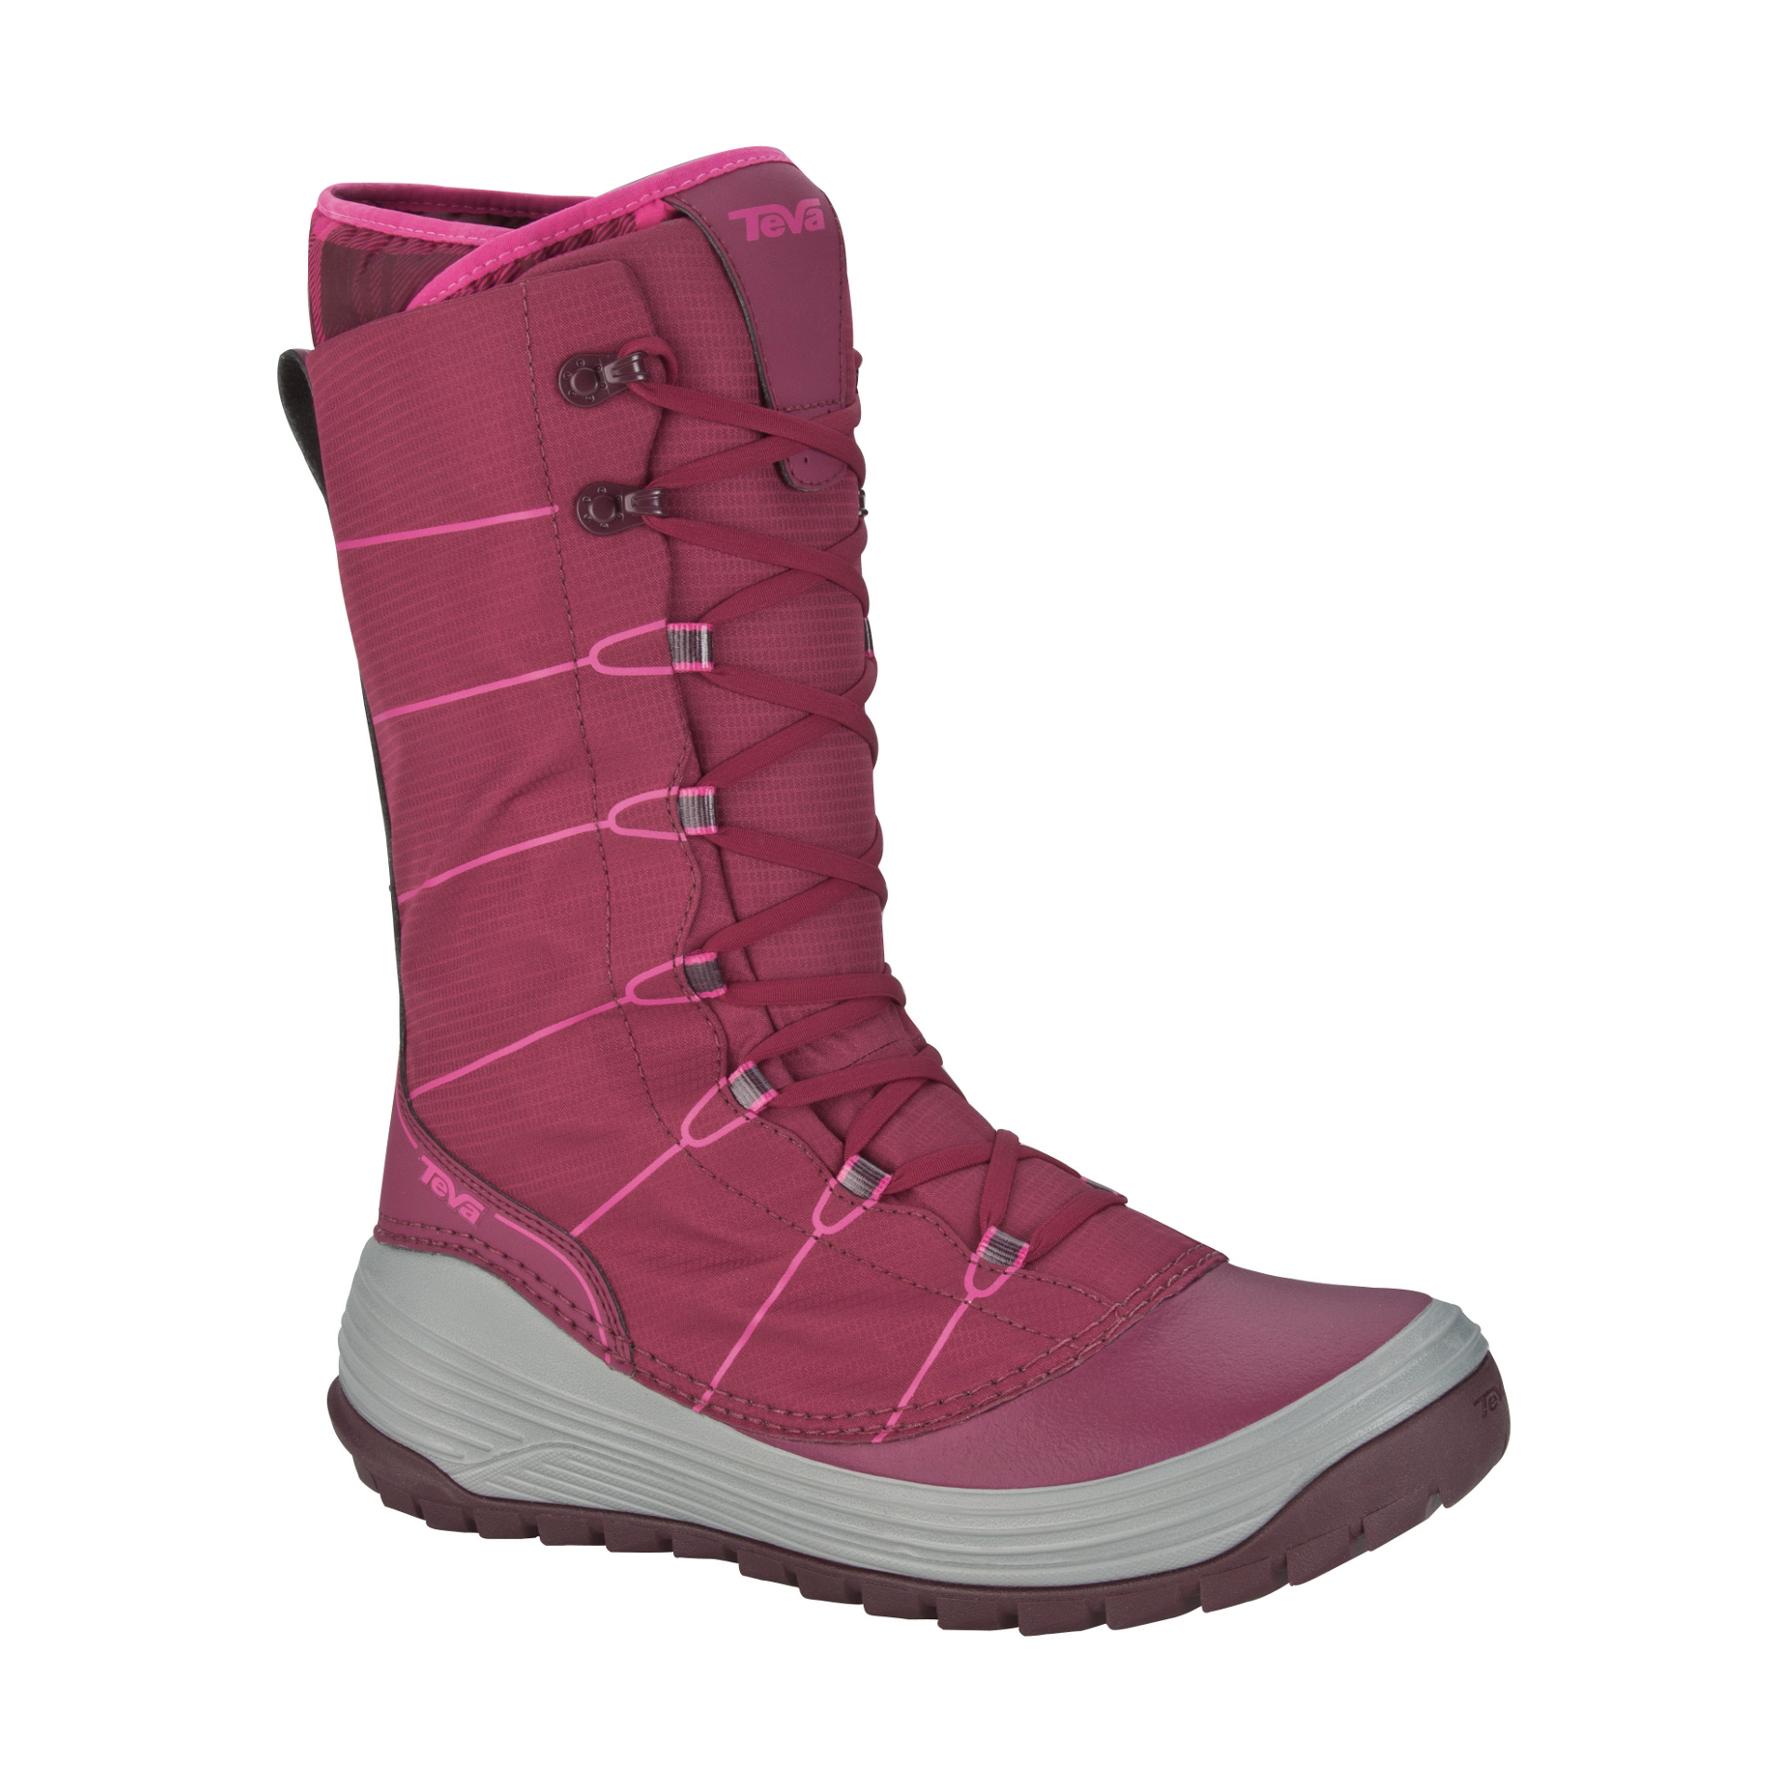 Foto Teva Jordanelle Zapatos de invierno damas rosa/rojo, 36,5 foto 246185